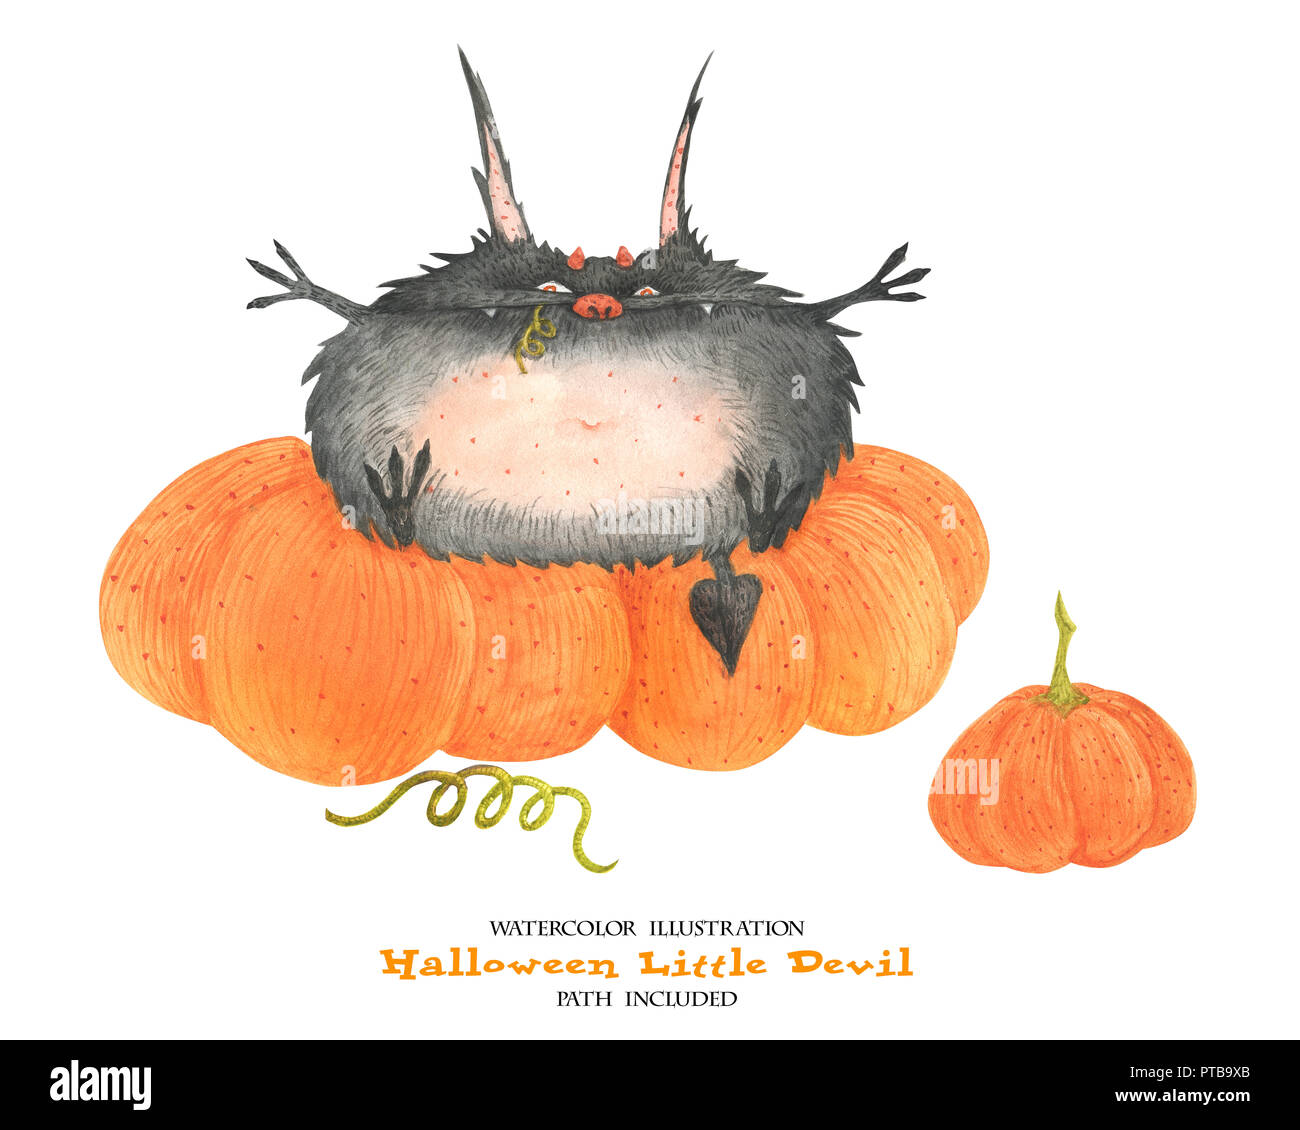 Illustration à l'aquarelle pour l'Halloween. Le petit diable avalé un potiron. Chemin isolé, inclus Banque D'Images